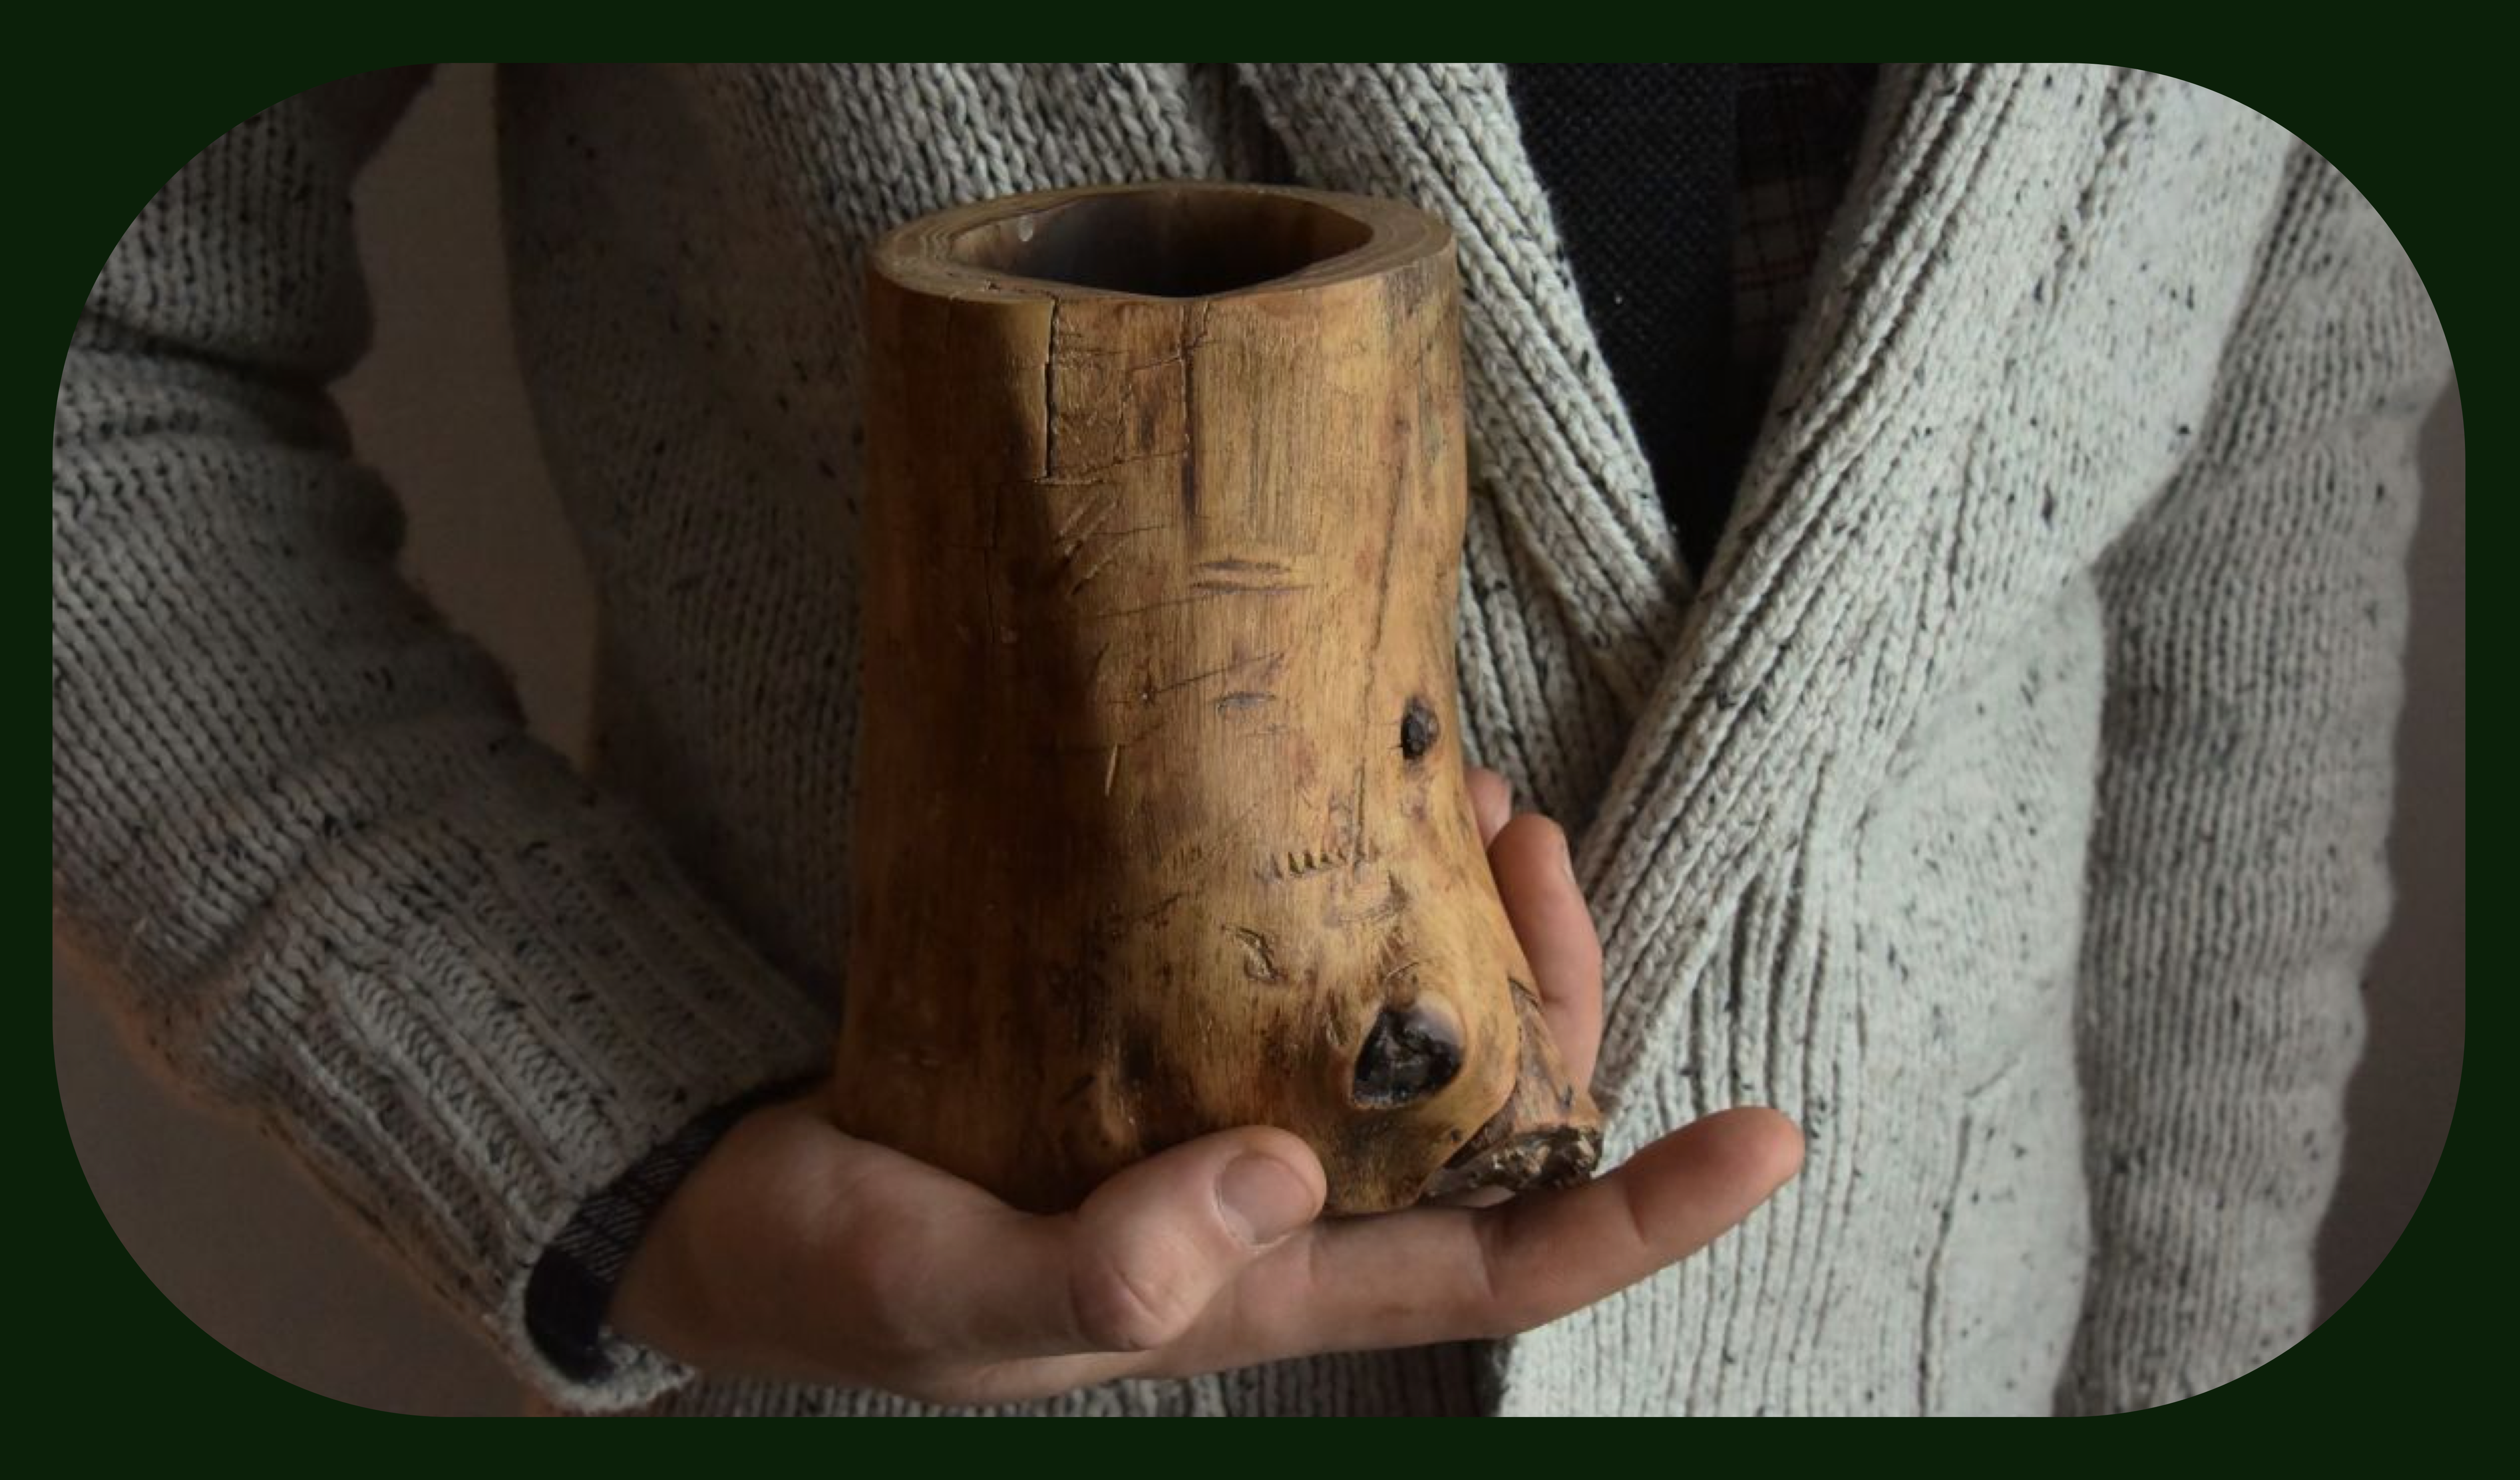  Стартап из сучка и задоринки: кто и как в Самаре делает экопосуду и предметы быта из поваленных деревьев